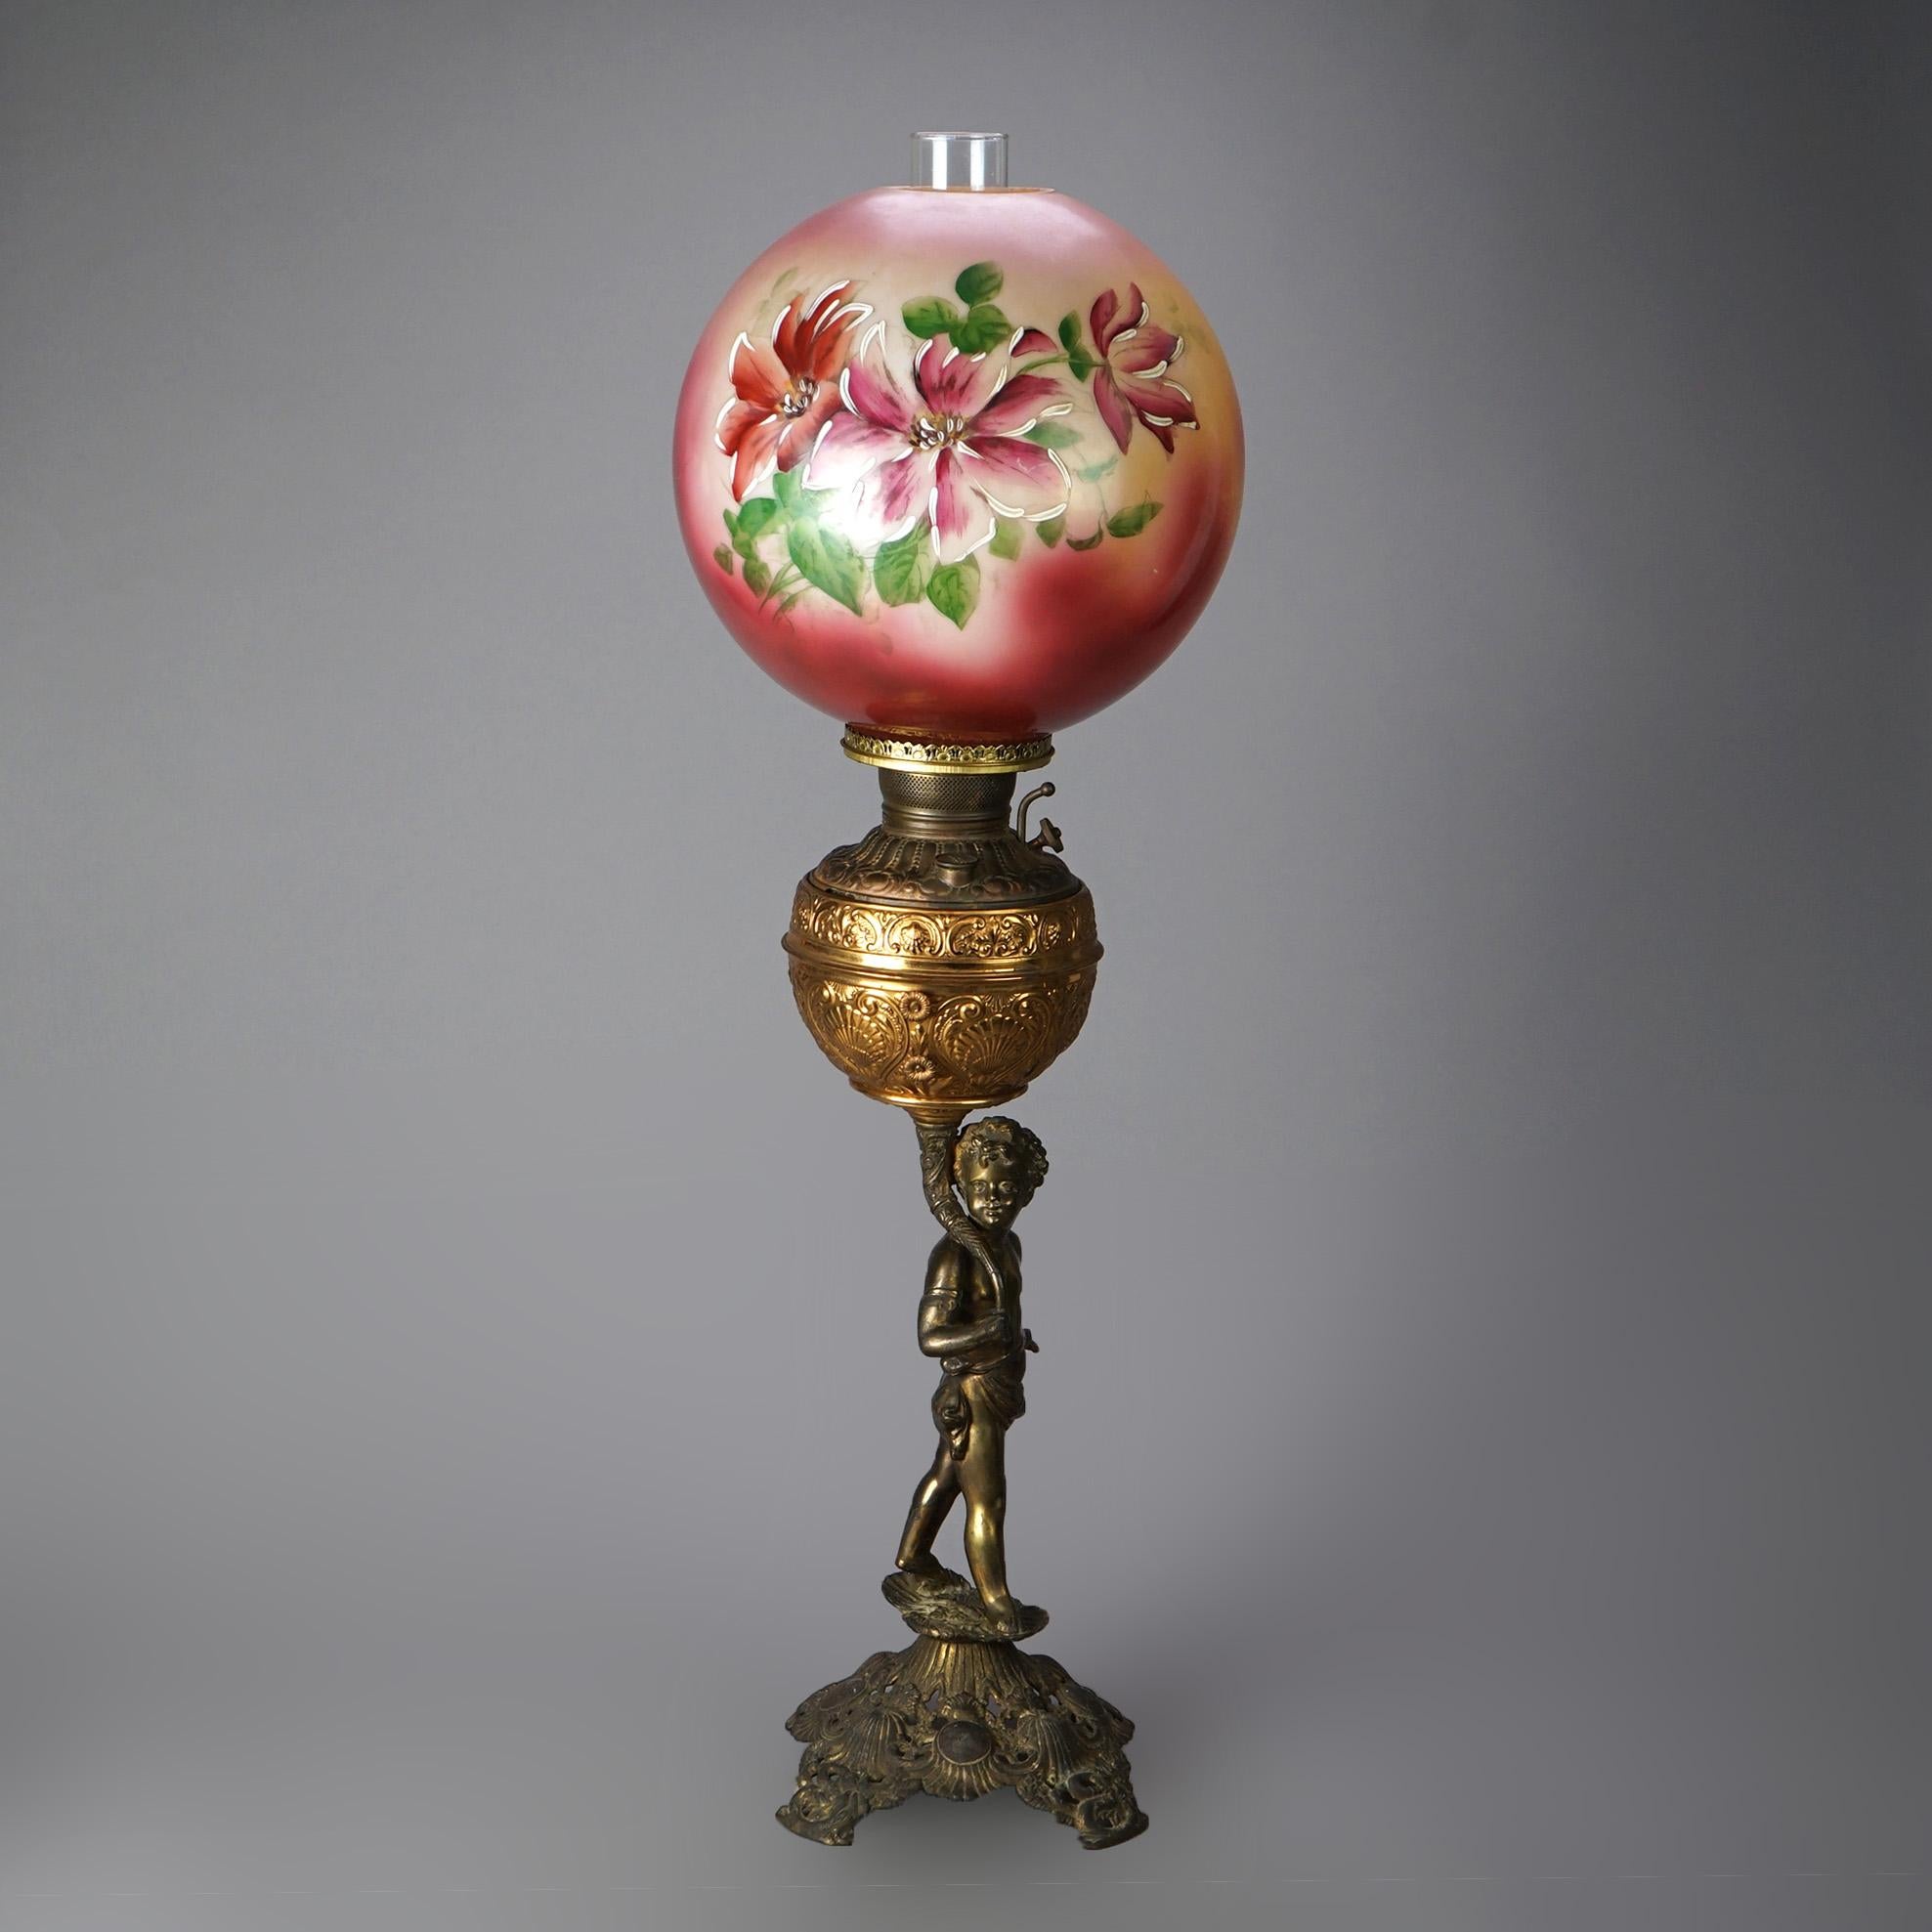 Eine antike figurale Öllampe bietet eine handbemalte Blumenlampe auf einem Sockel aus gegossenem Messing und vergoldetem Metall mit einem Jungen in ländlicher Umgebung, um 1890

Maße - 34,25 